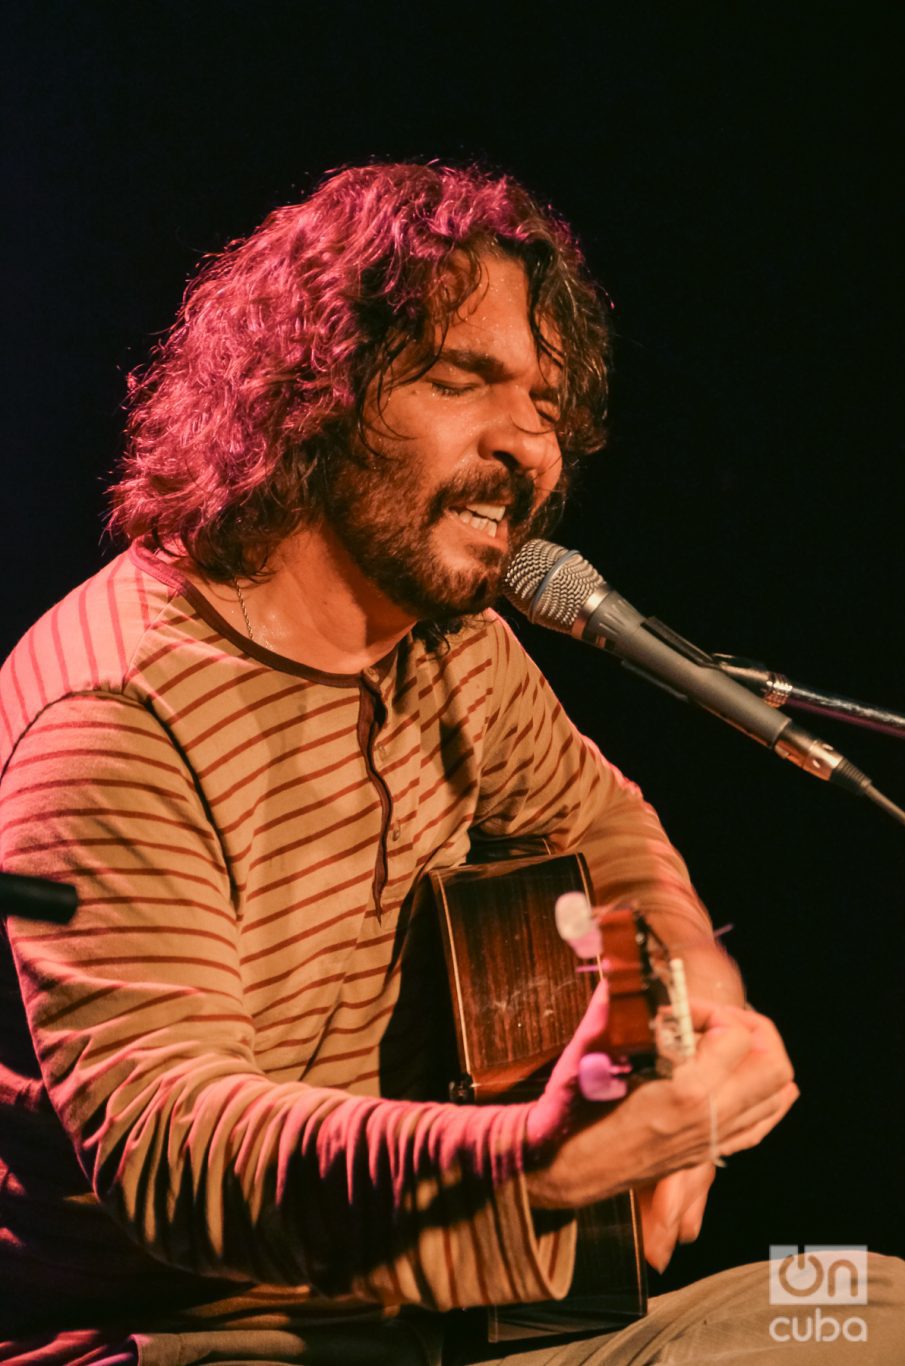 Santiago Feliú en Argentina durante un concierto en 2013. Foto: Kaloian.
